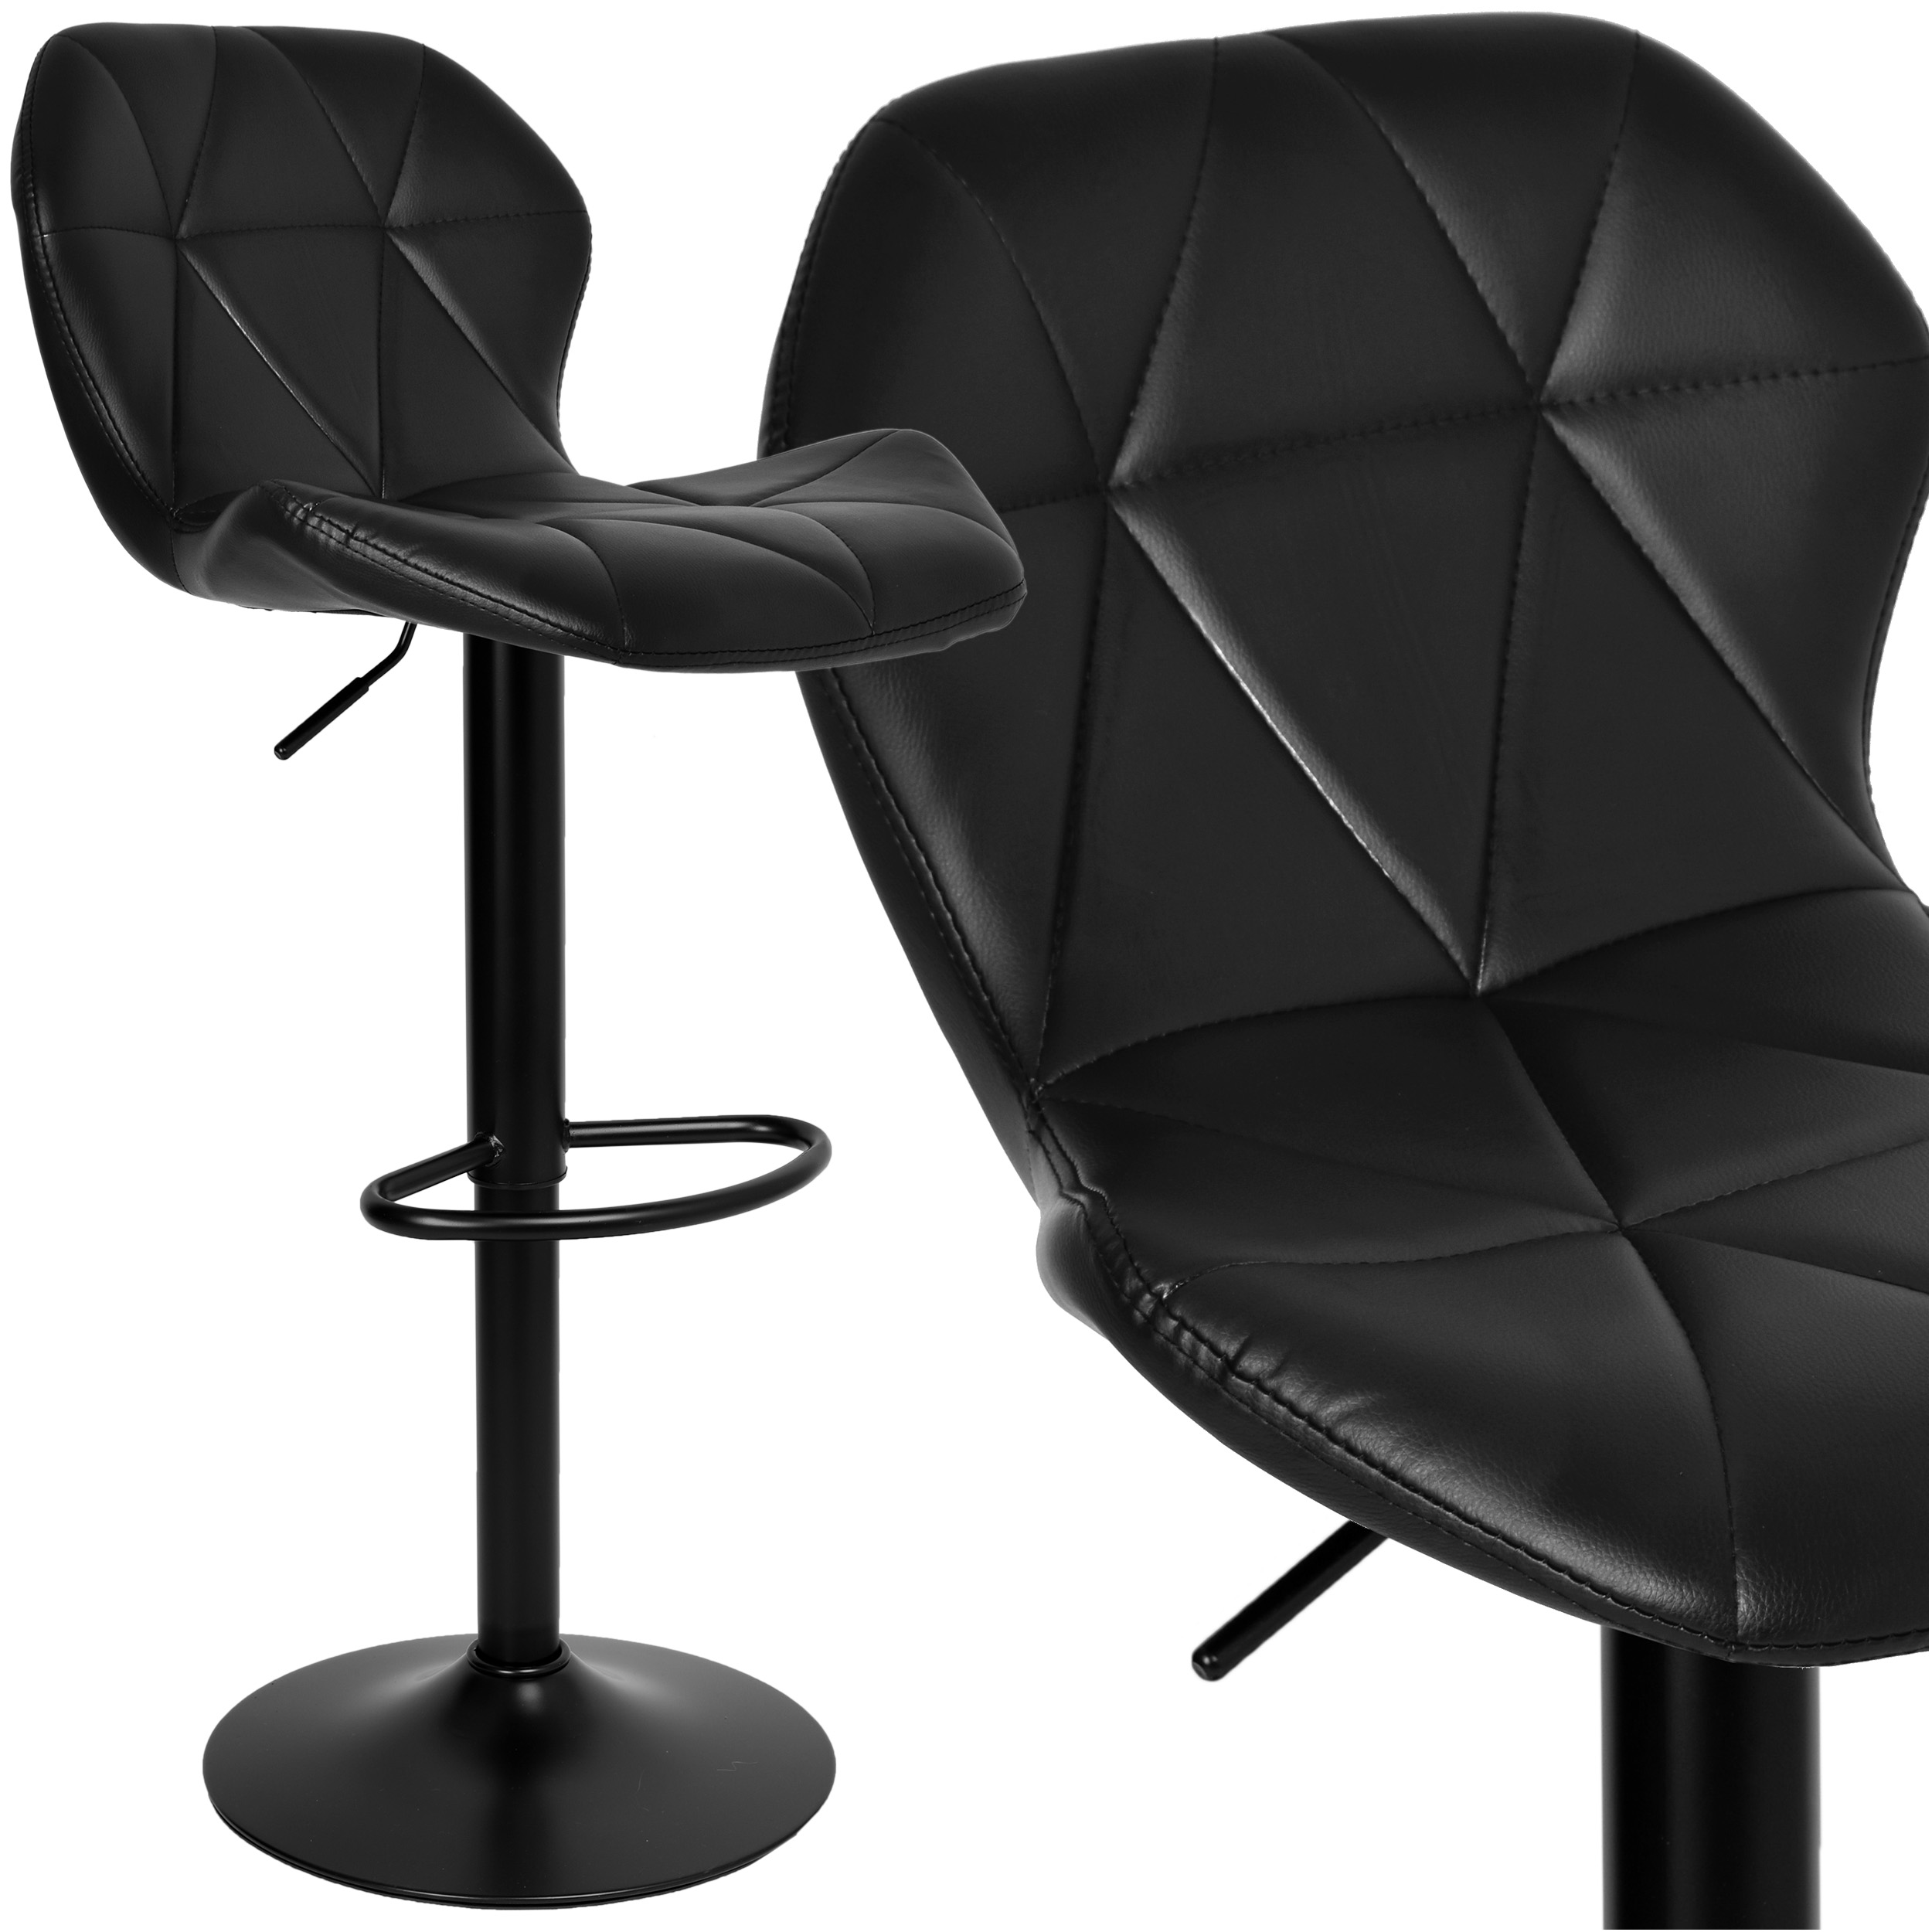 Krzesło obrotowe Gordon Black czarne